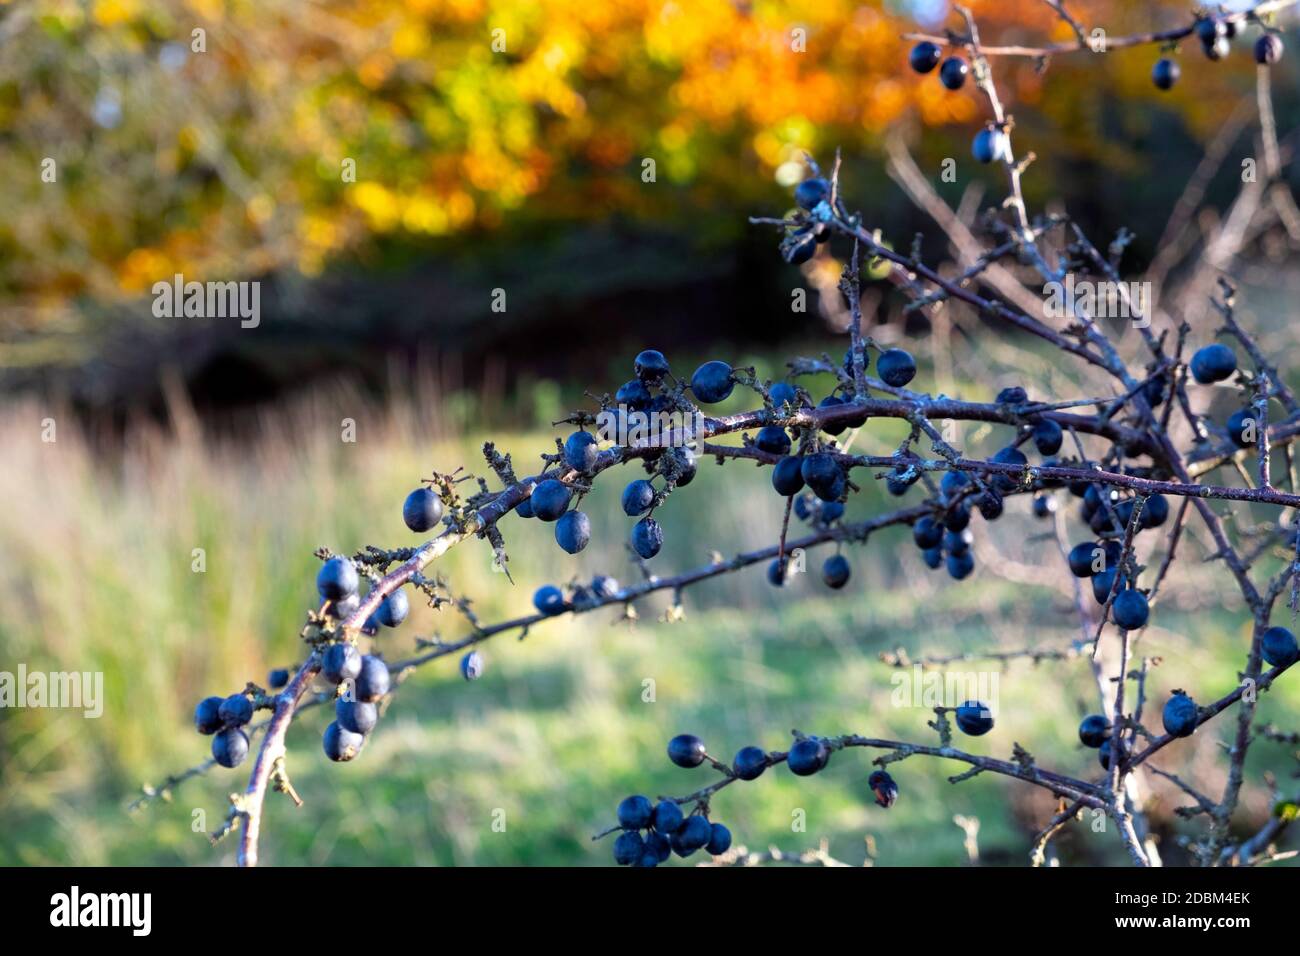 Sloes baies de sloe bleu sauvage sloes prêts à cueillir Arbuste épineux dans la campagne du Dyfed Carmarthenshire pays de Galles Royaume-Uni Royaume-Uni 2020 KATHY DEWITT Banque D'Images